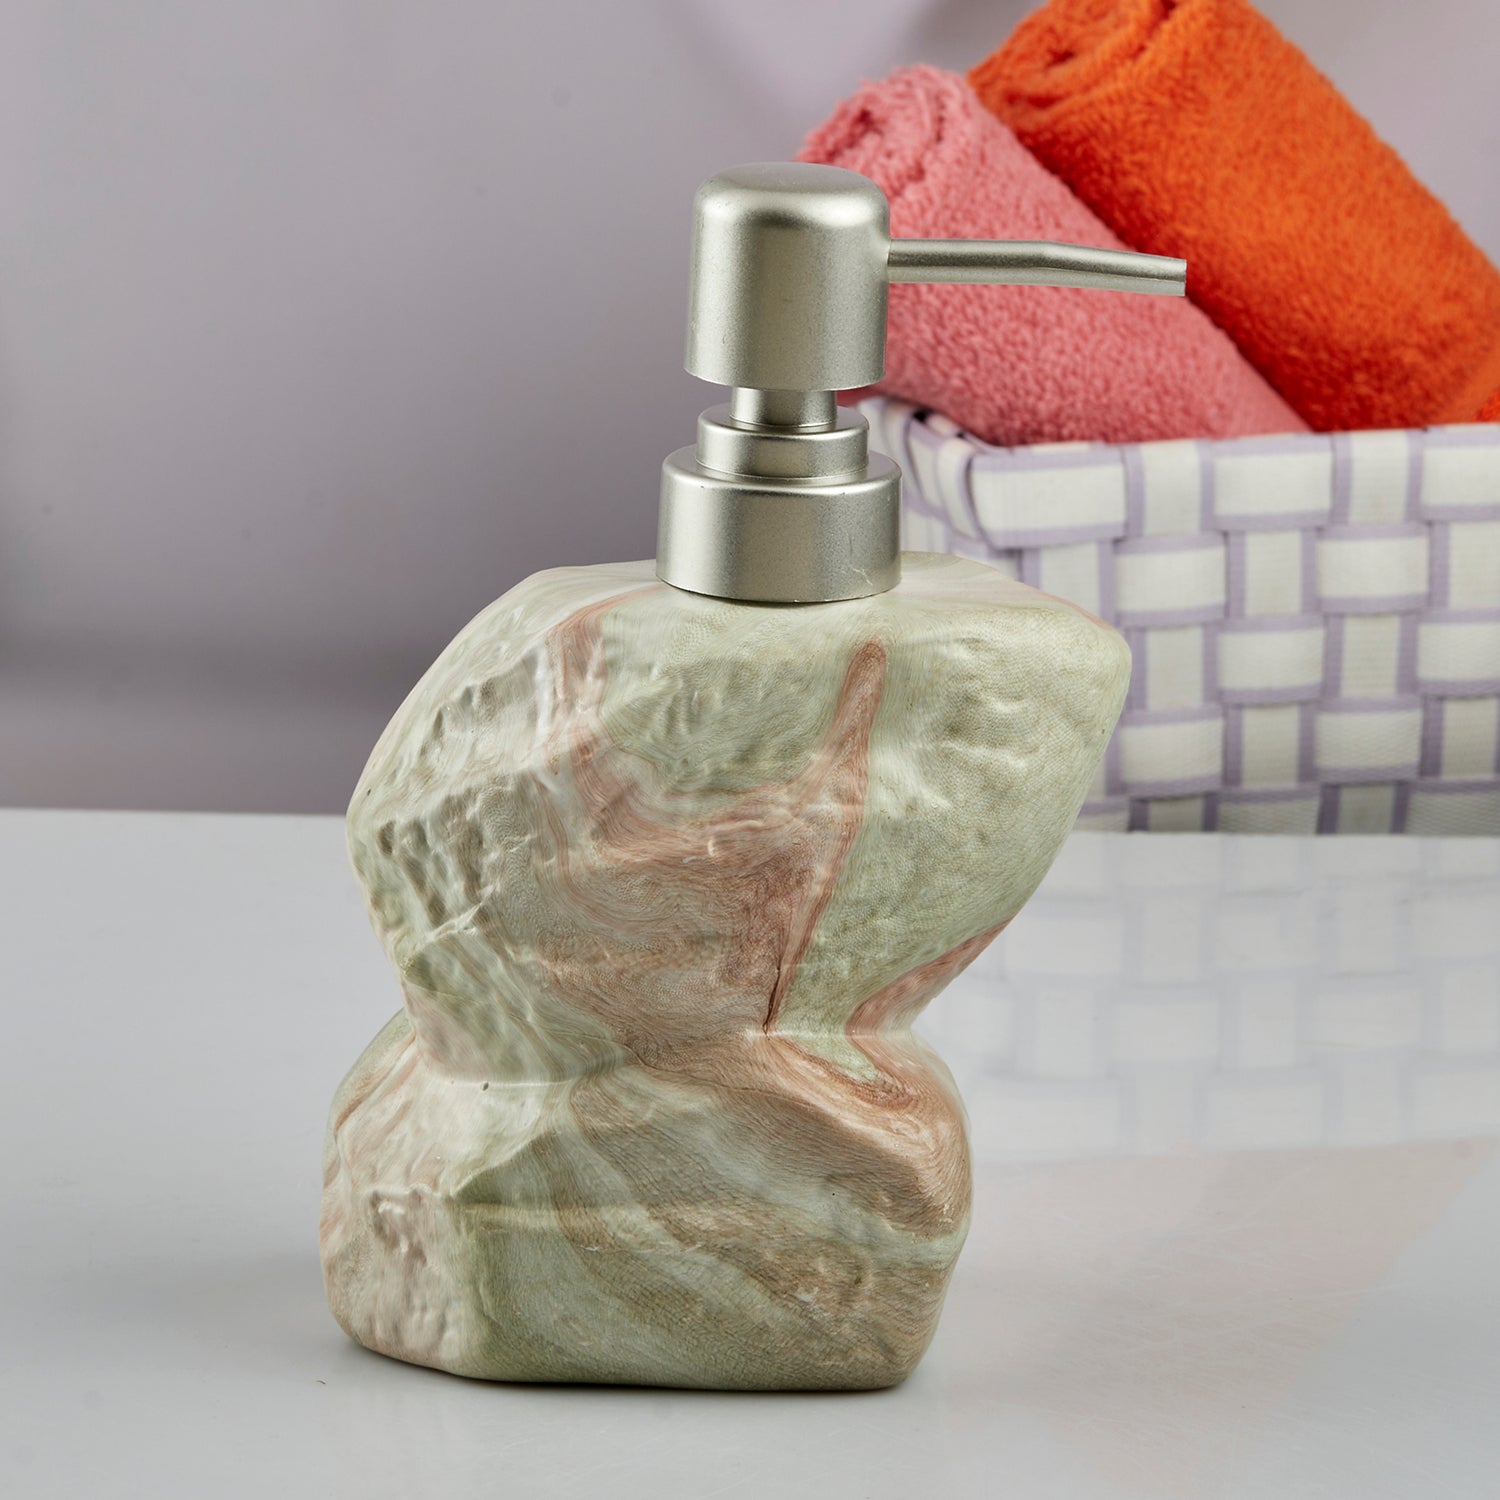 Ceramic Soap Dispenser liquid handwash pump for Bathroom, Set of 1, Beige (7629)